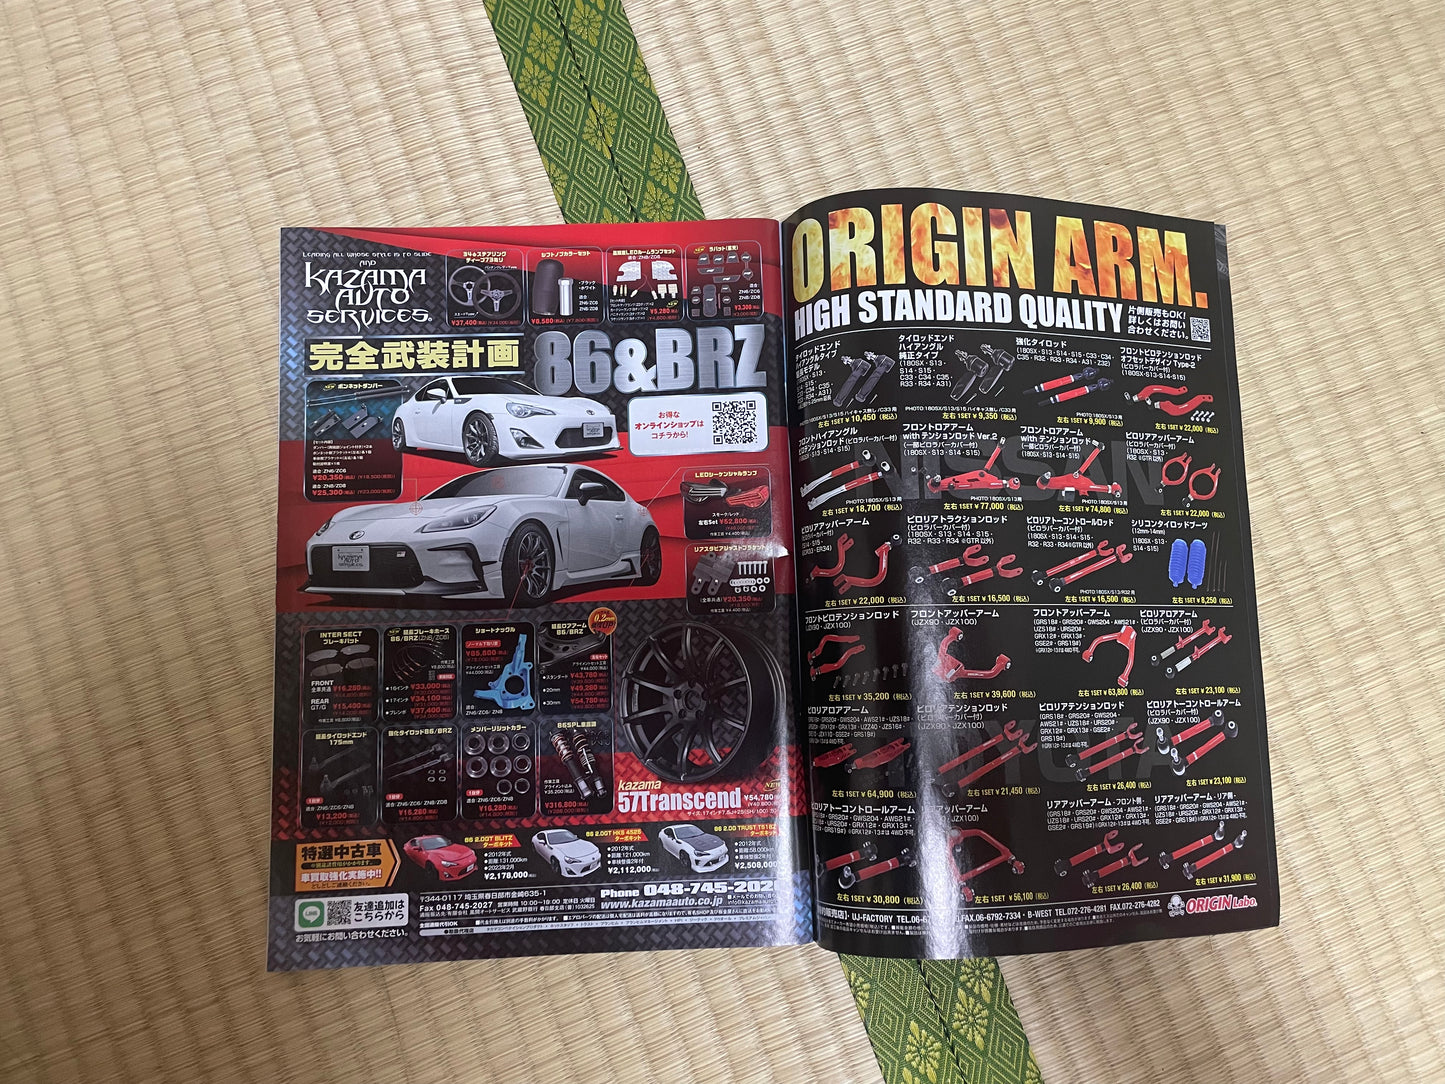 DRIFT TENGOKU Magazine (Naoki Nakamura Special)